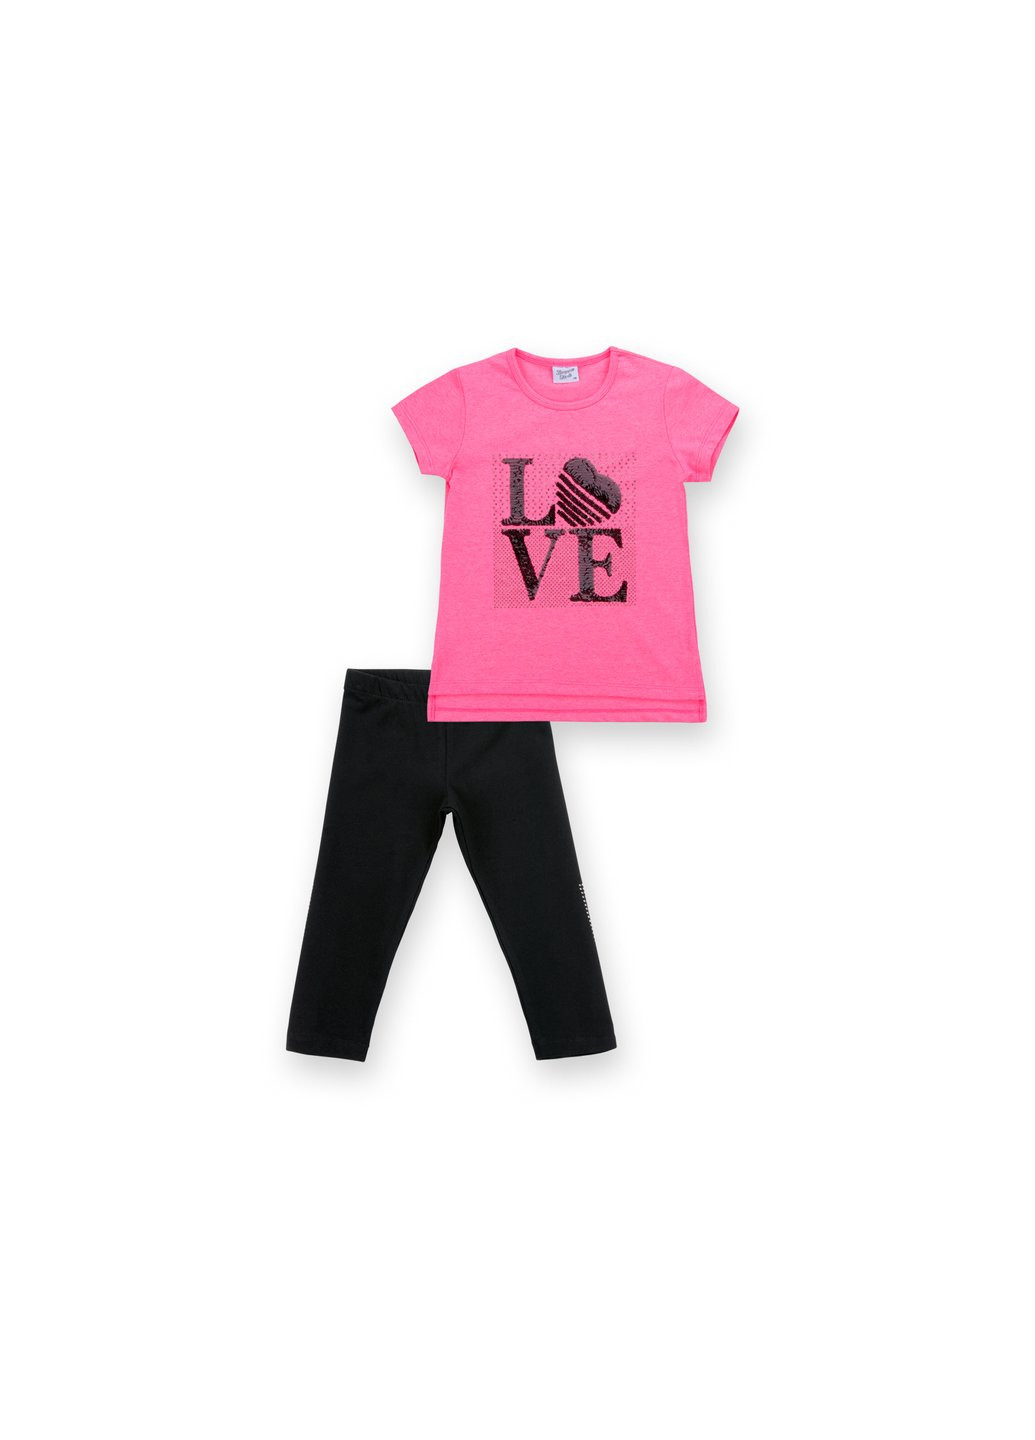 Комбинированный летний набор детской одежды с надписью "love" из пайеток (8307-134g-pink) Breeze